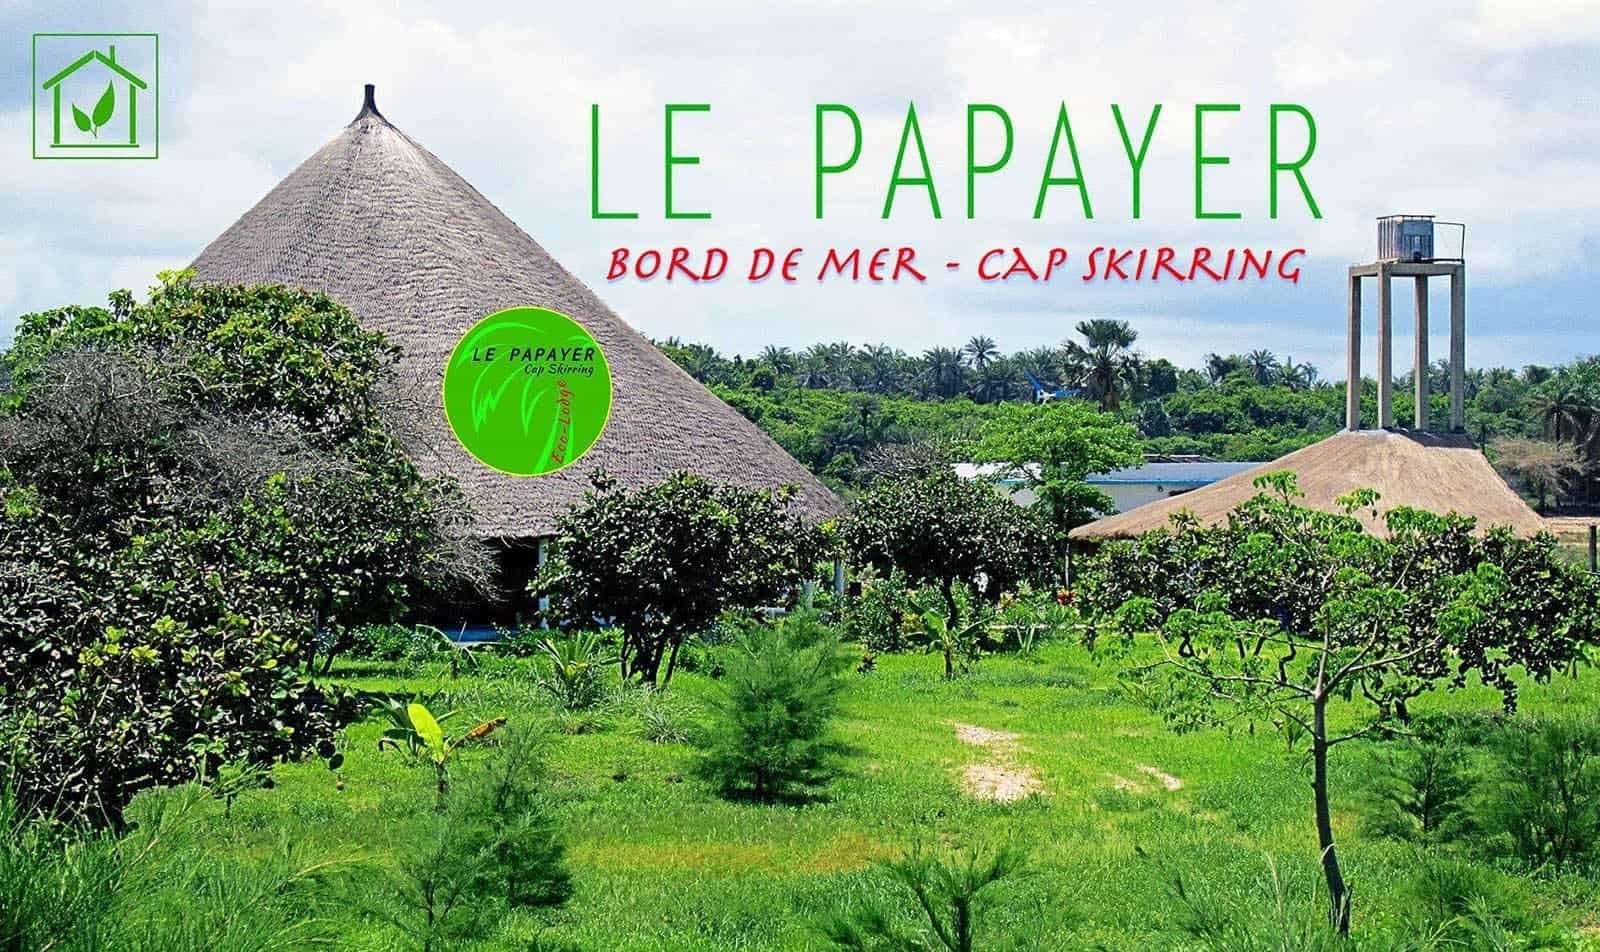 Hôtel Cap Skirring Bienvenue au Papayer Ecolodge meilleur hôtel bord de mer Casamance Sénégal